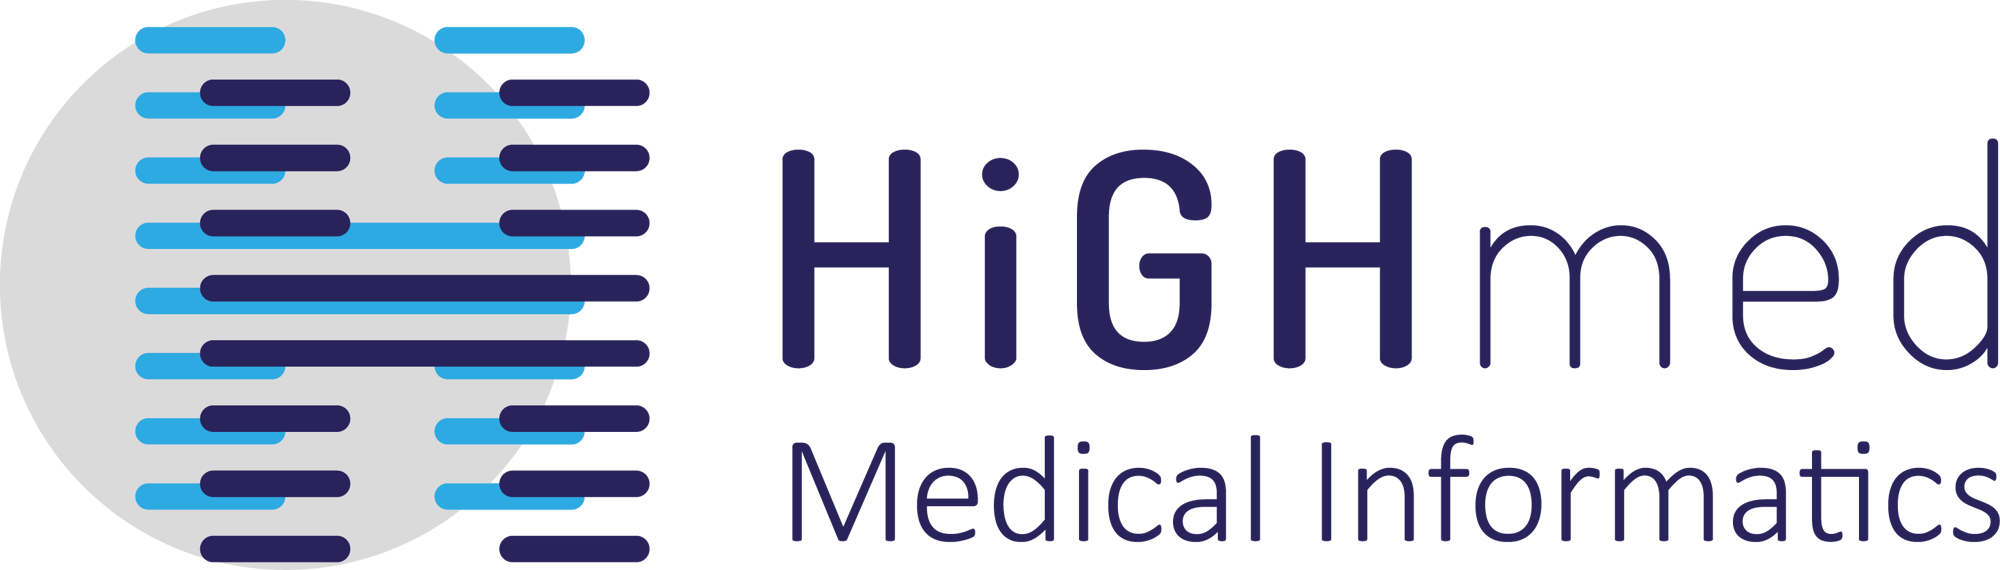 HiGHmed-logo_SB